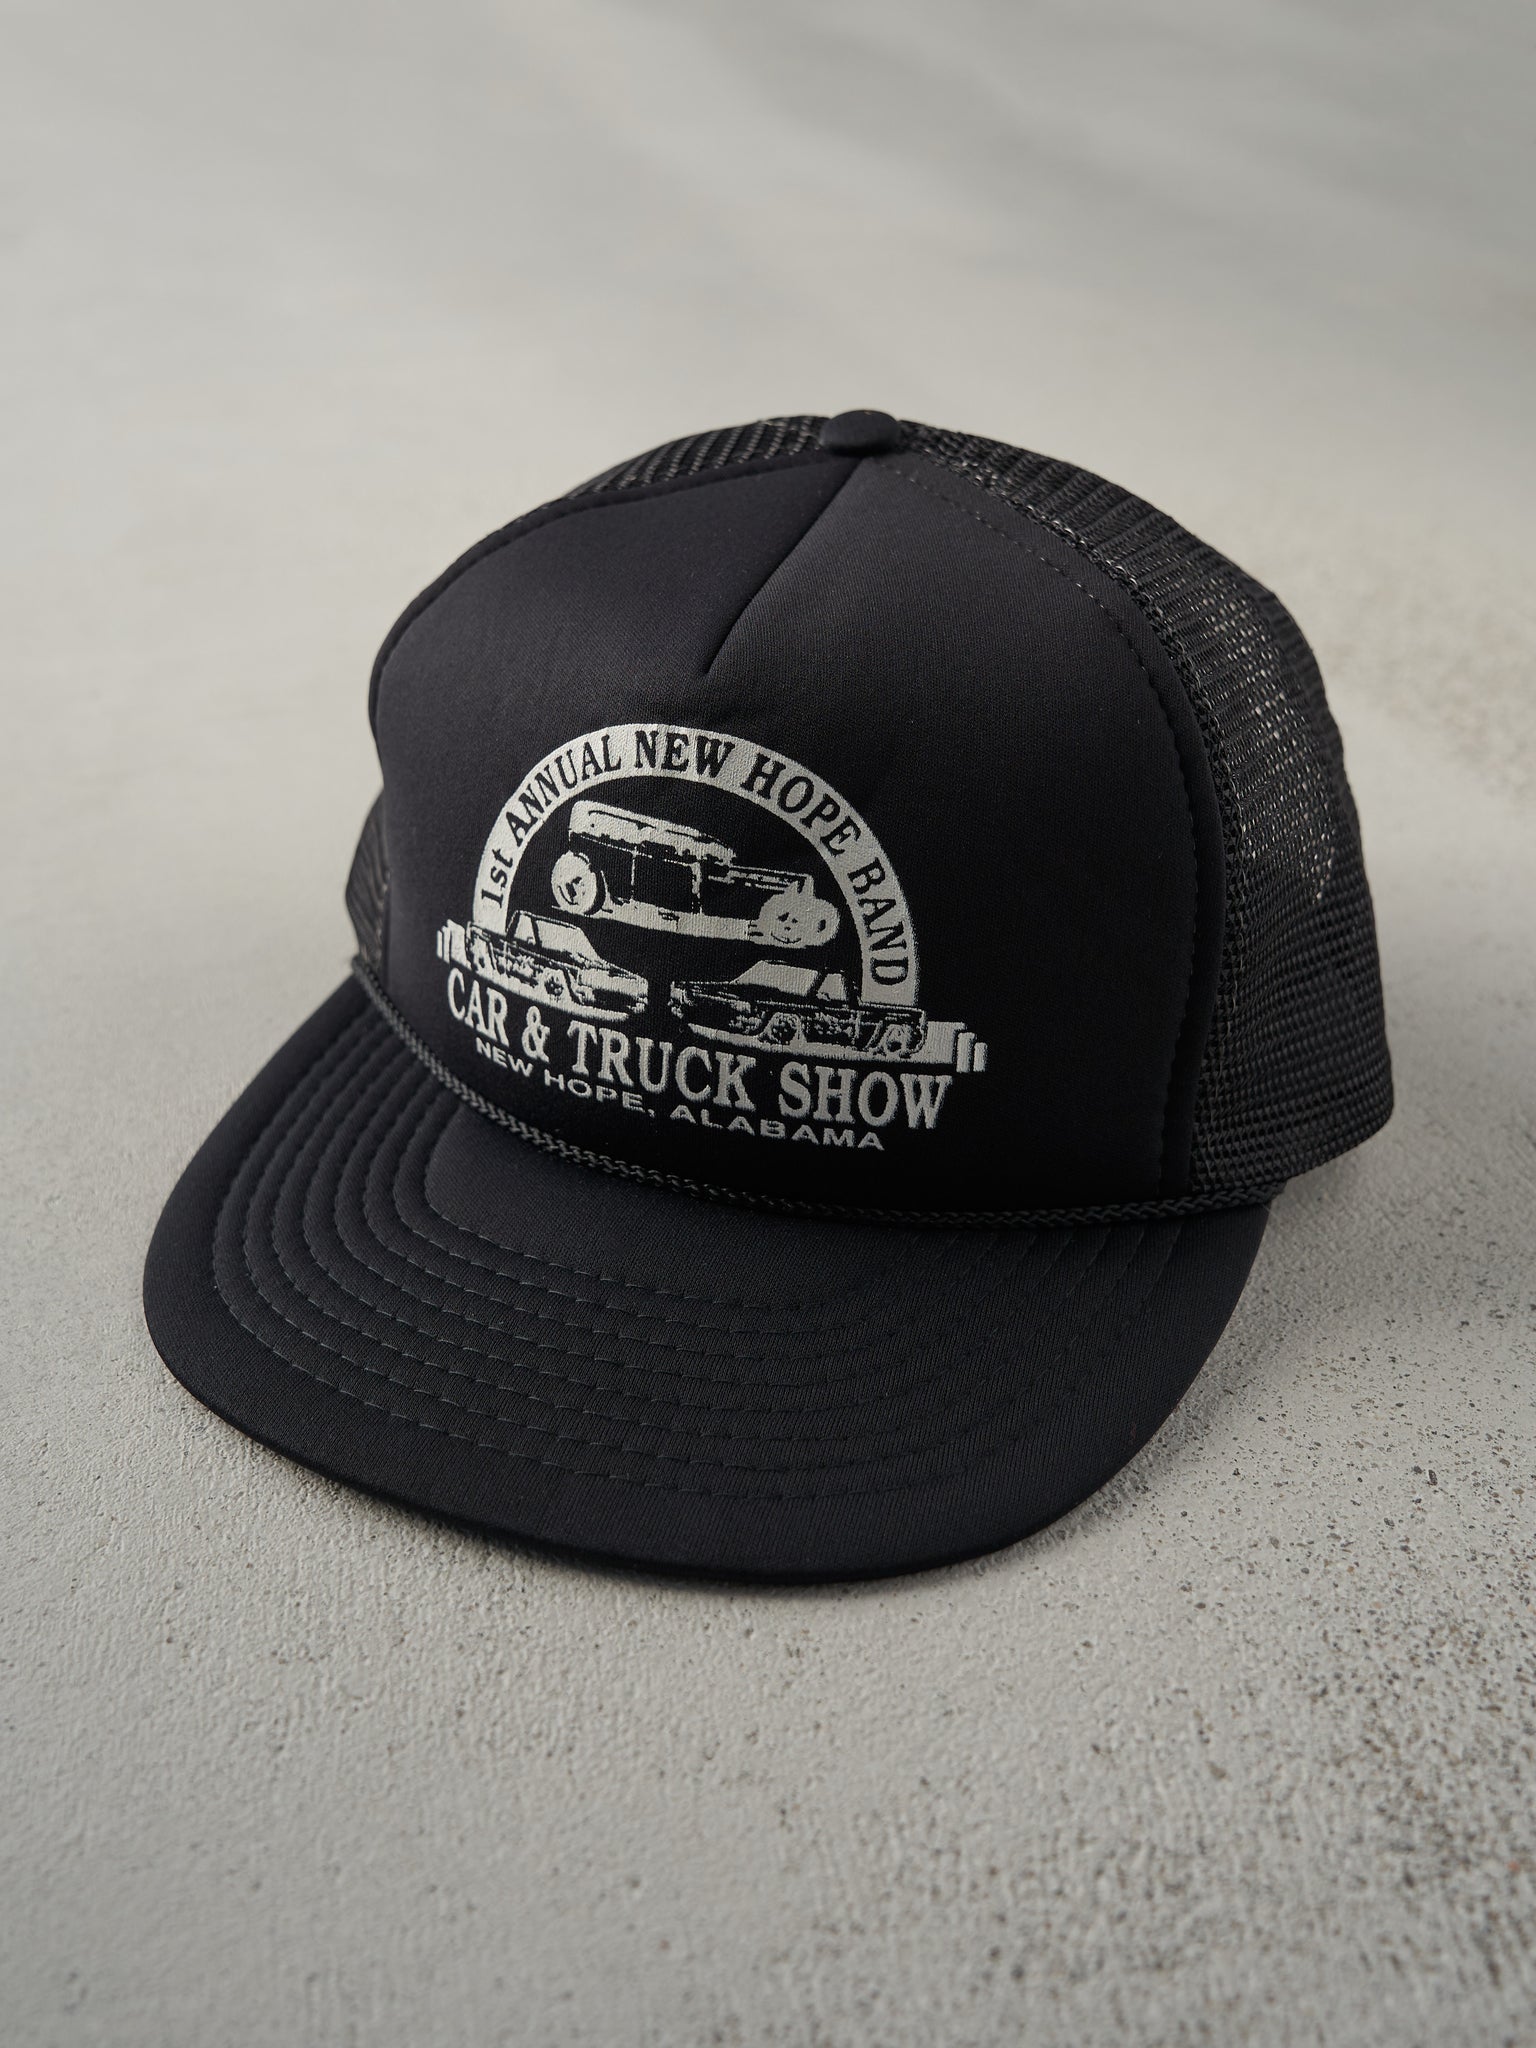 Vintage 90s Black Foam Trucker Hat